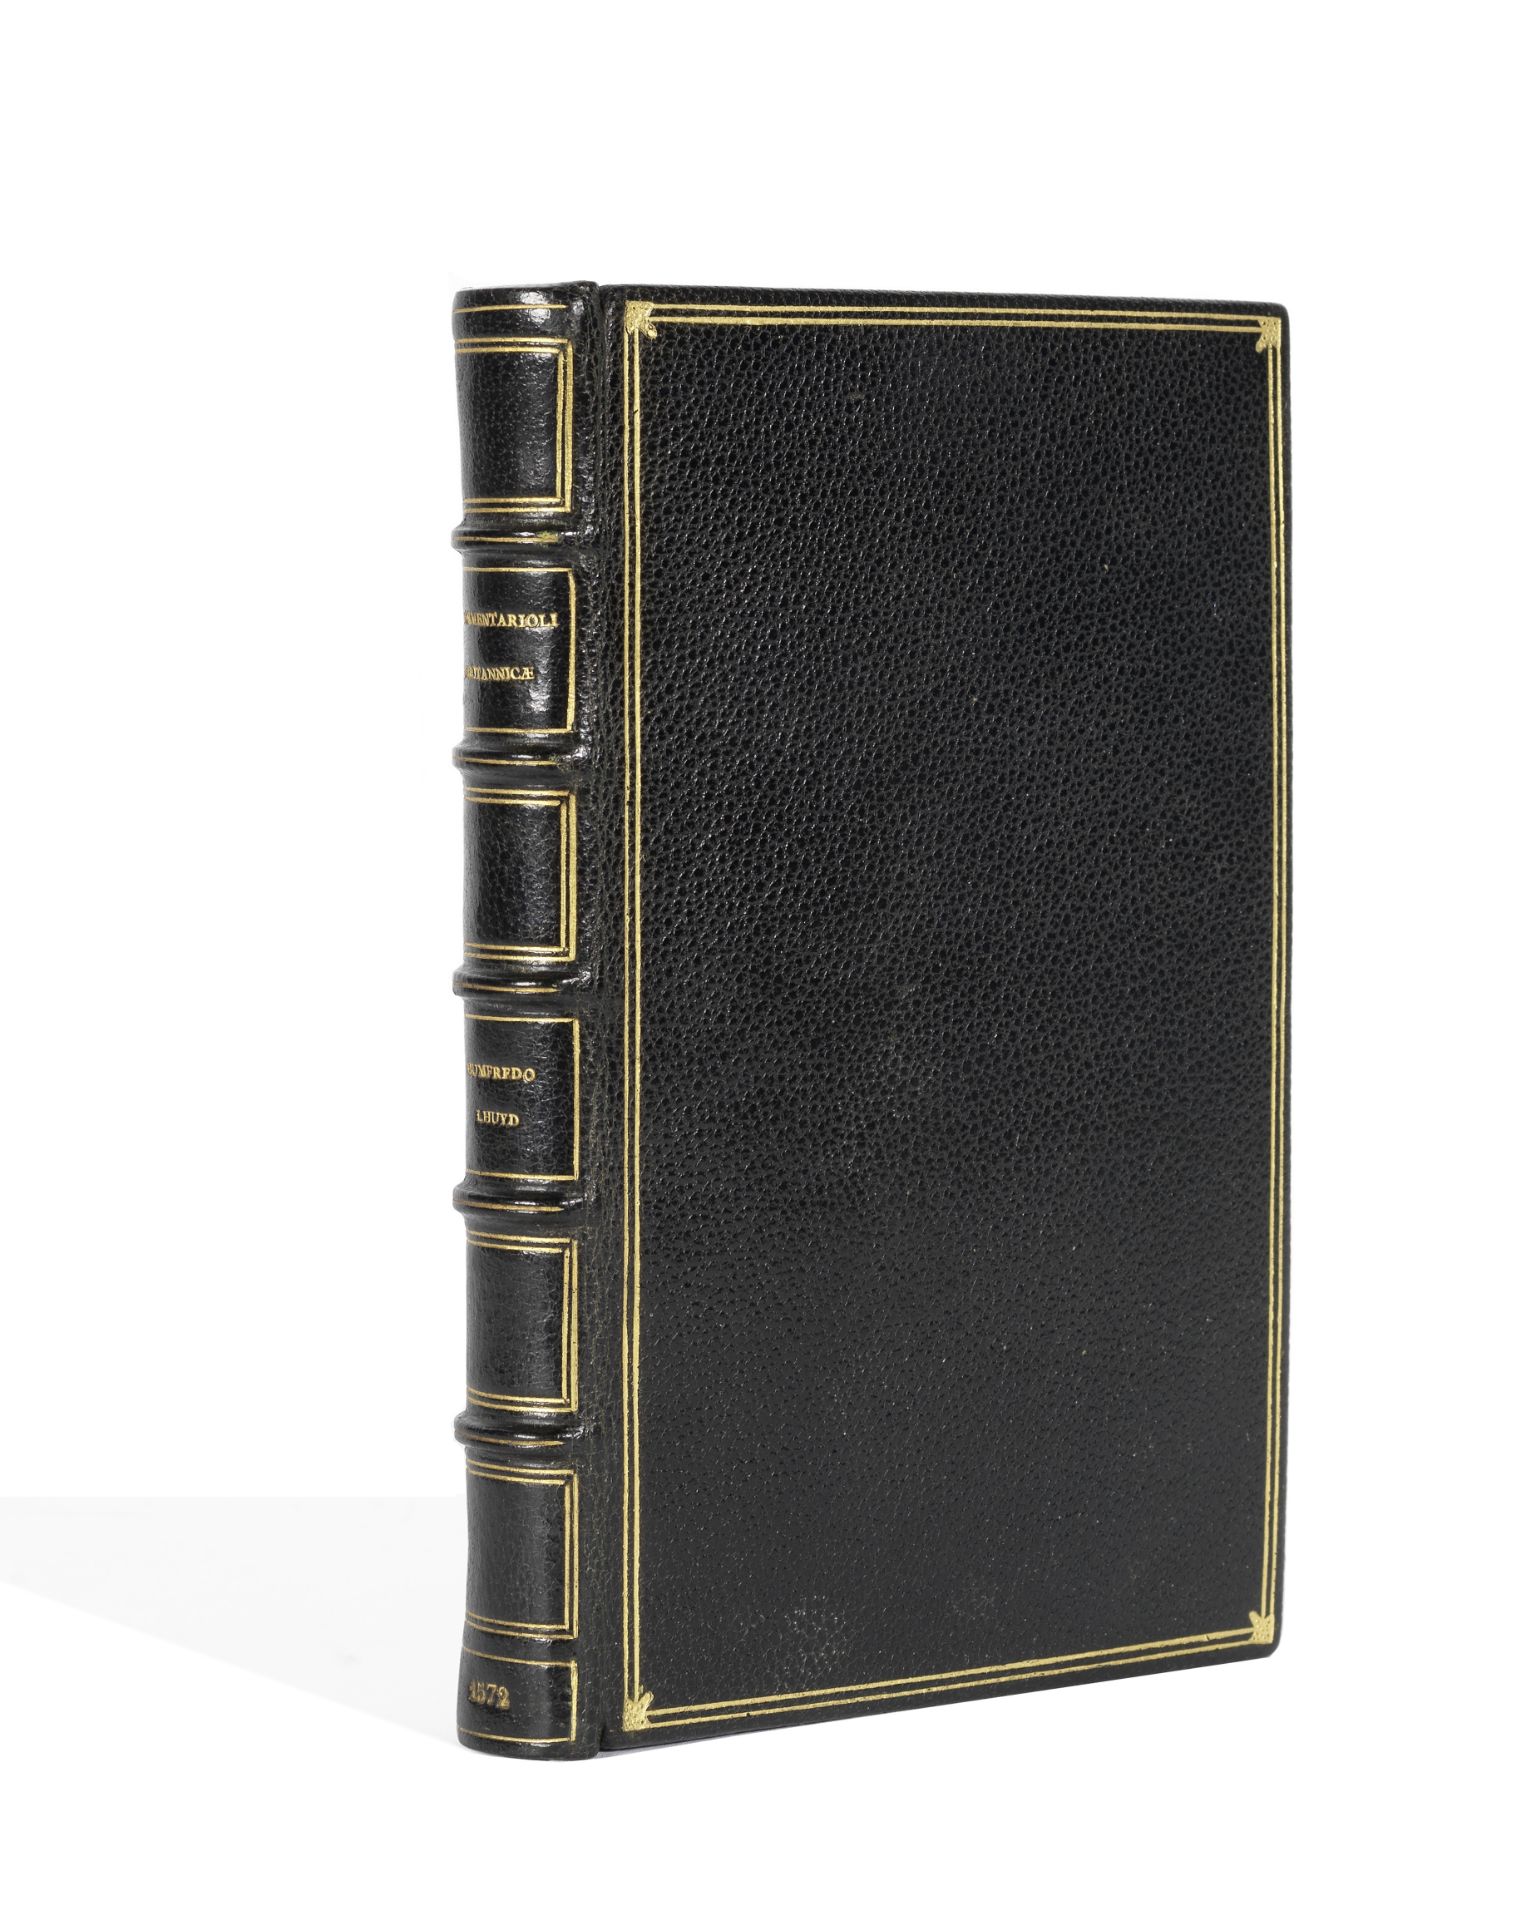 LLWYD (HUMPHREY) Commentarioli Britannicae descriptionis fragmentum, FIRST EDITION, Cologne, J. B...